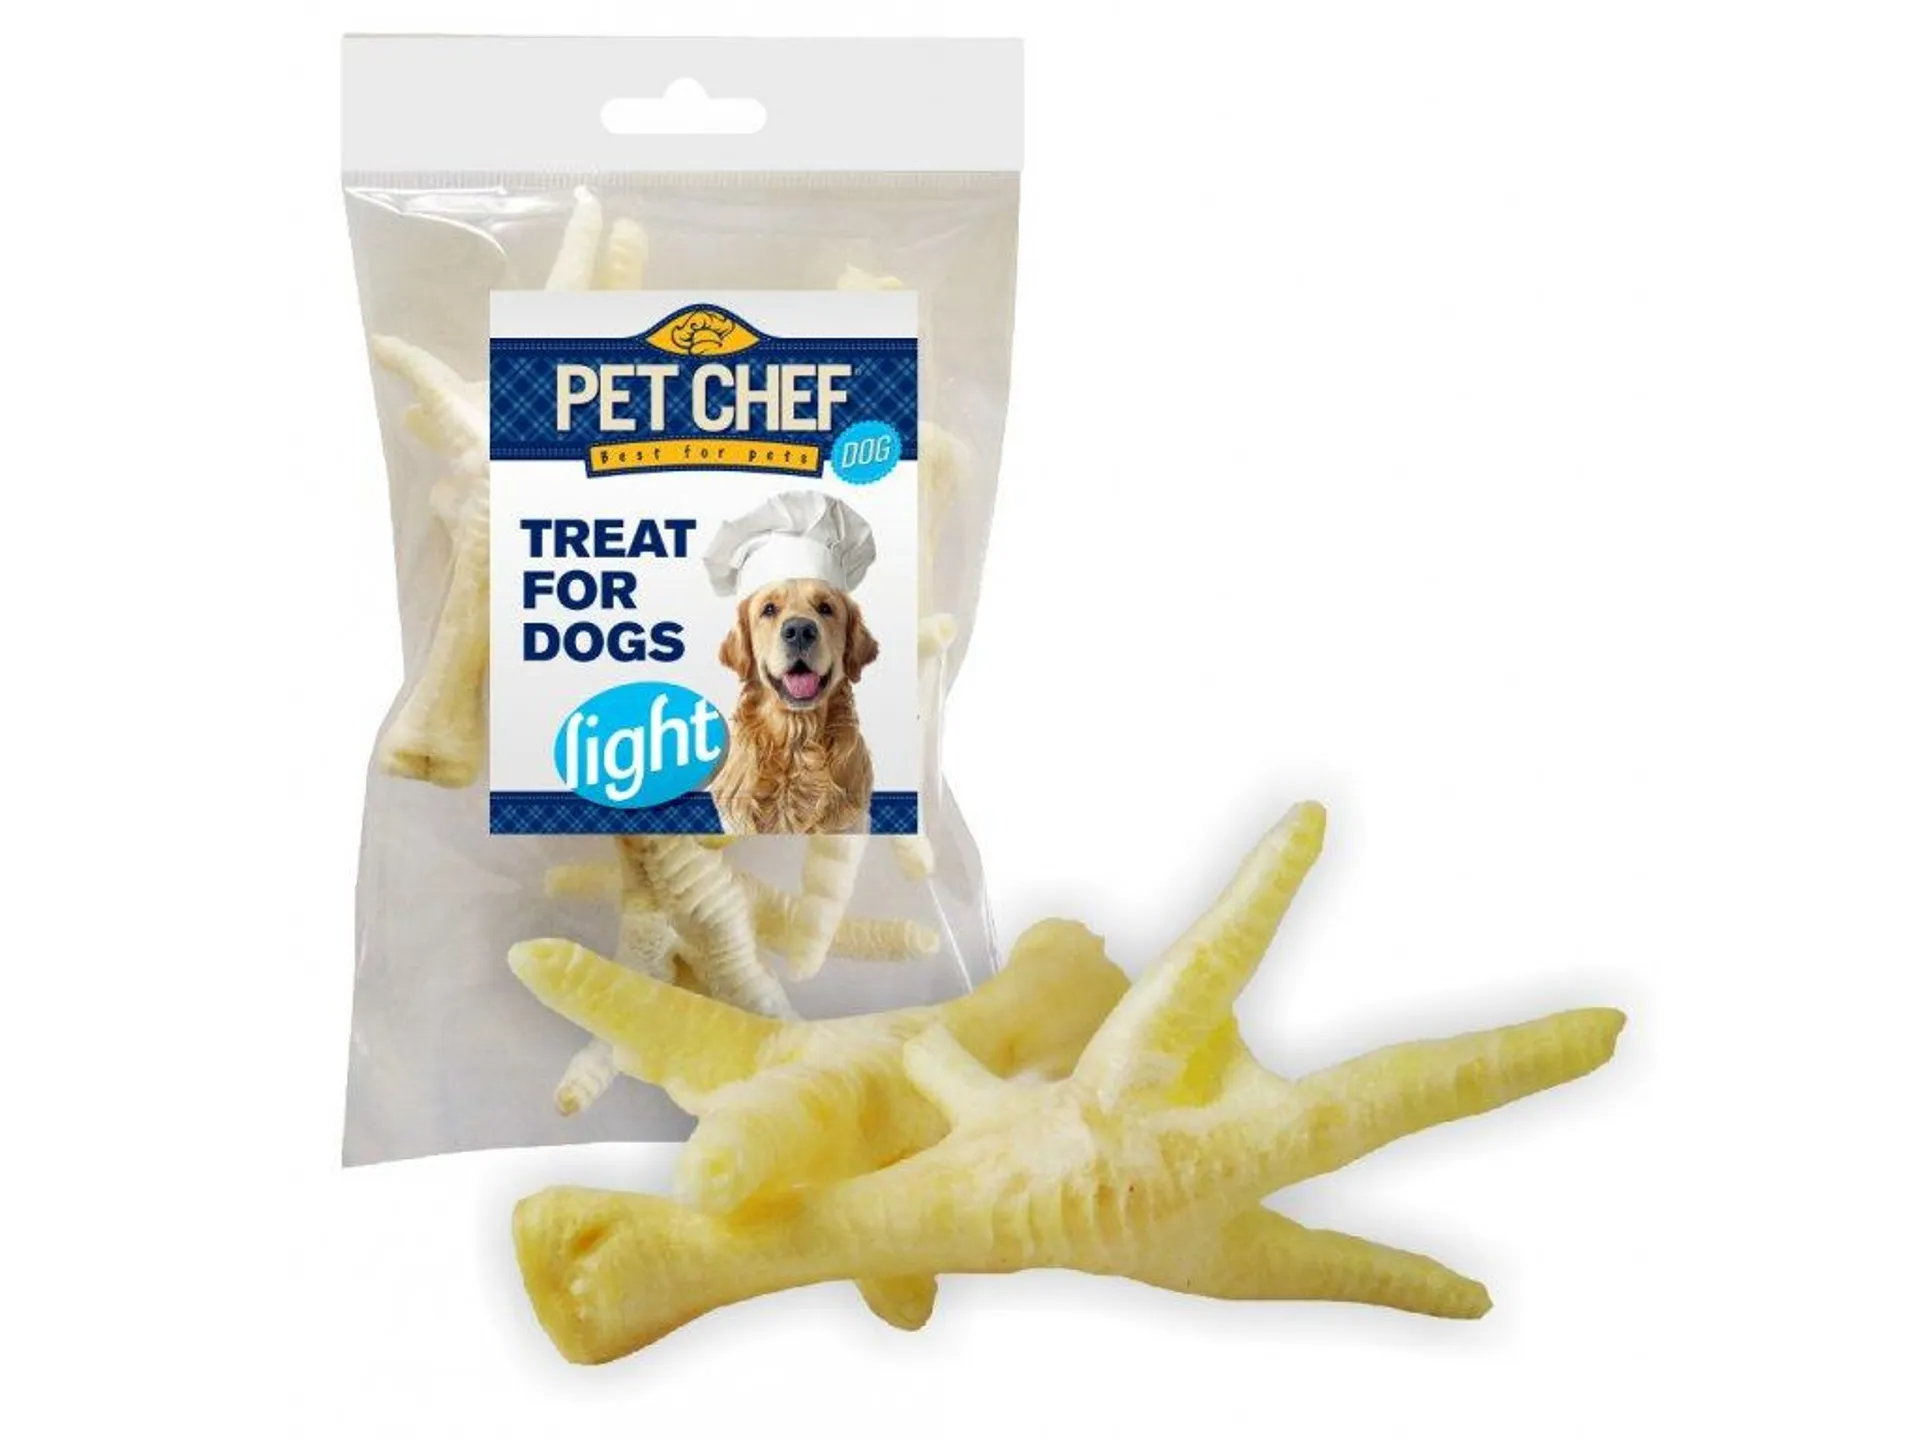 Pet Chef Dog hydinový behák biely 5ks